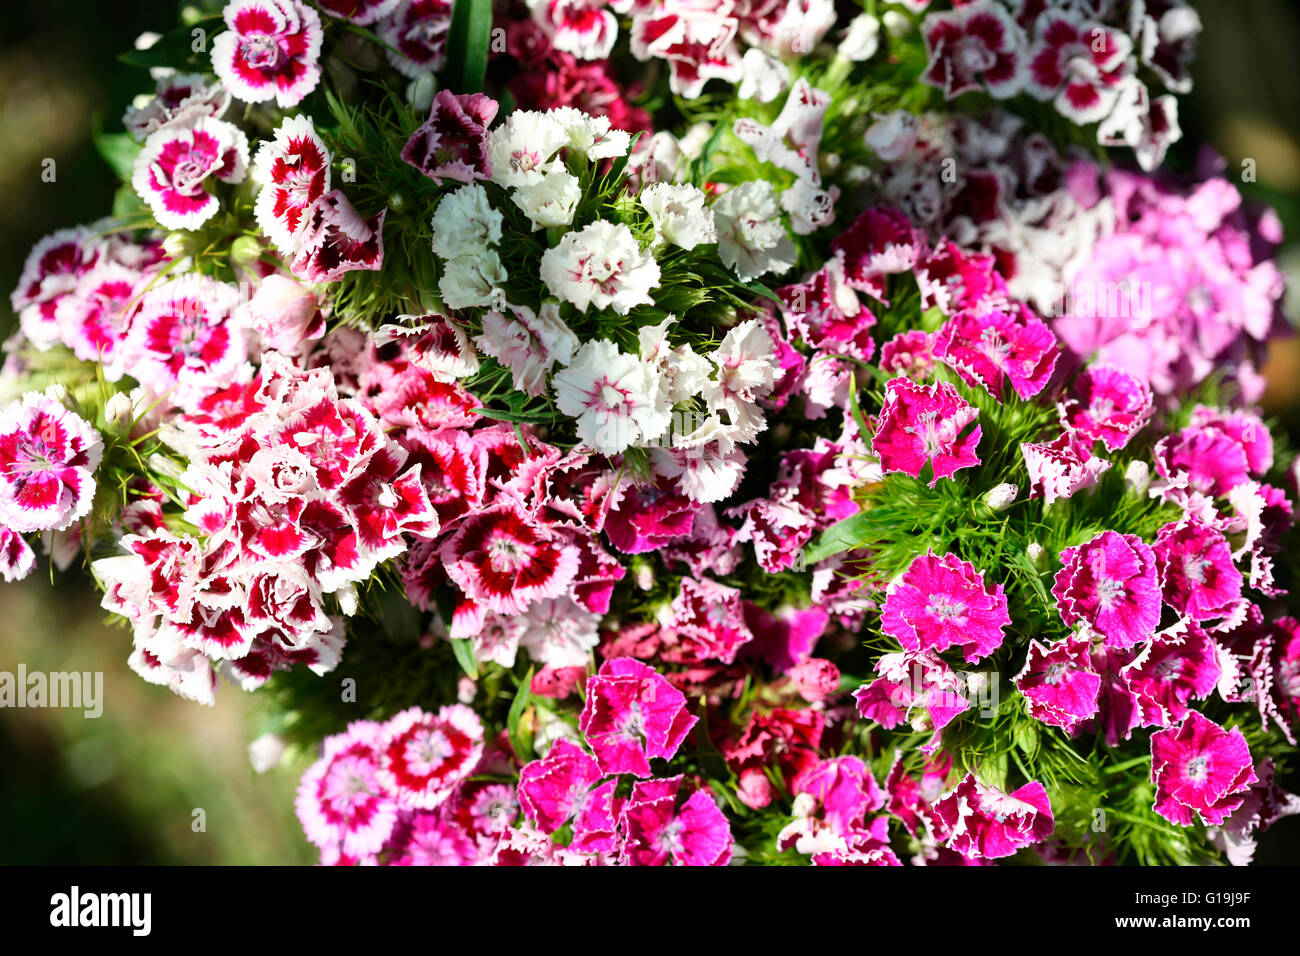 Mischung aus rosa und roten süßen Williams - Sprache der Blumen "Galanterie" "ein Lächeln" Jane Ann Butler Fotografie JABP1447 Stockfoto